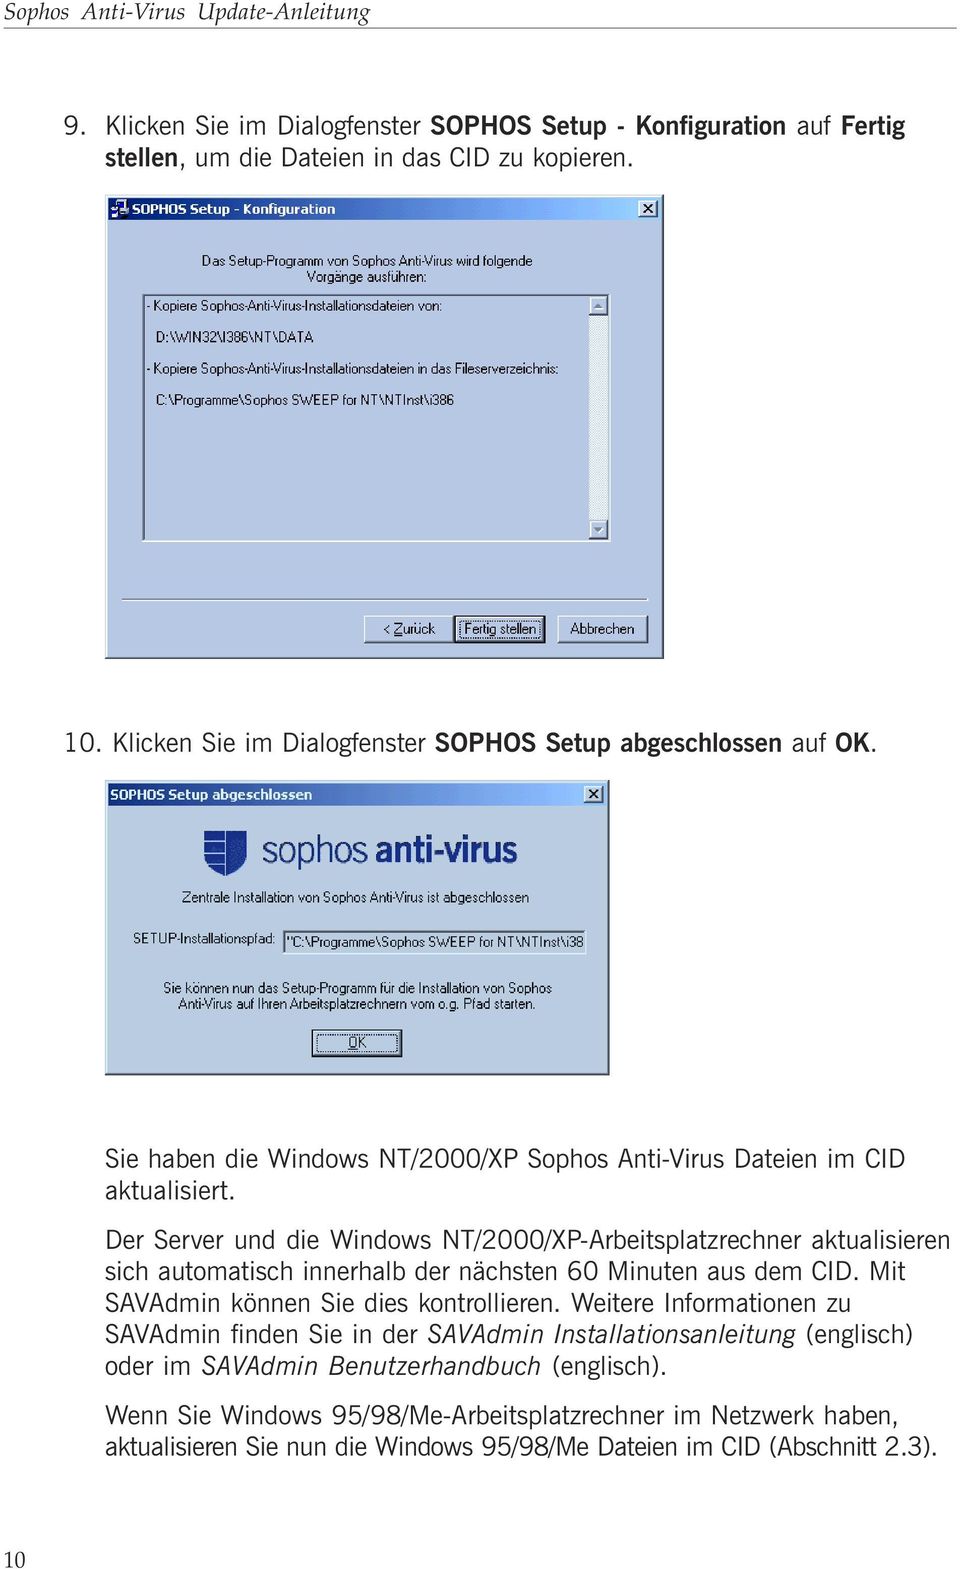 Der Server und die Windows NT/2000/XP-Arbeitsplatzrechner aktualisieren sich automatisch innerhalb der nächsten 60 Minuten aus dem CID. Mit SAVAdmin können Sie dies kontrollieren.